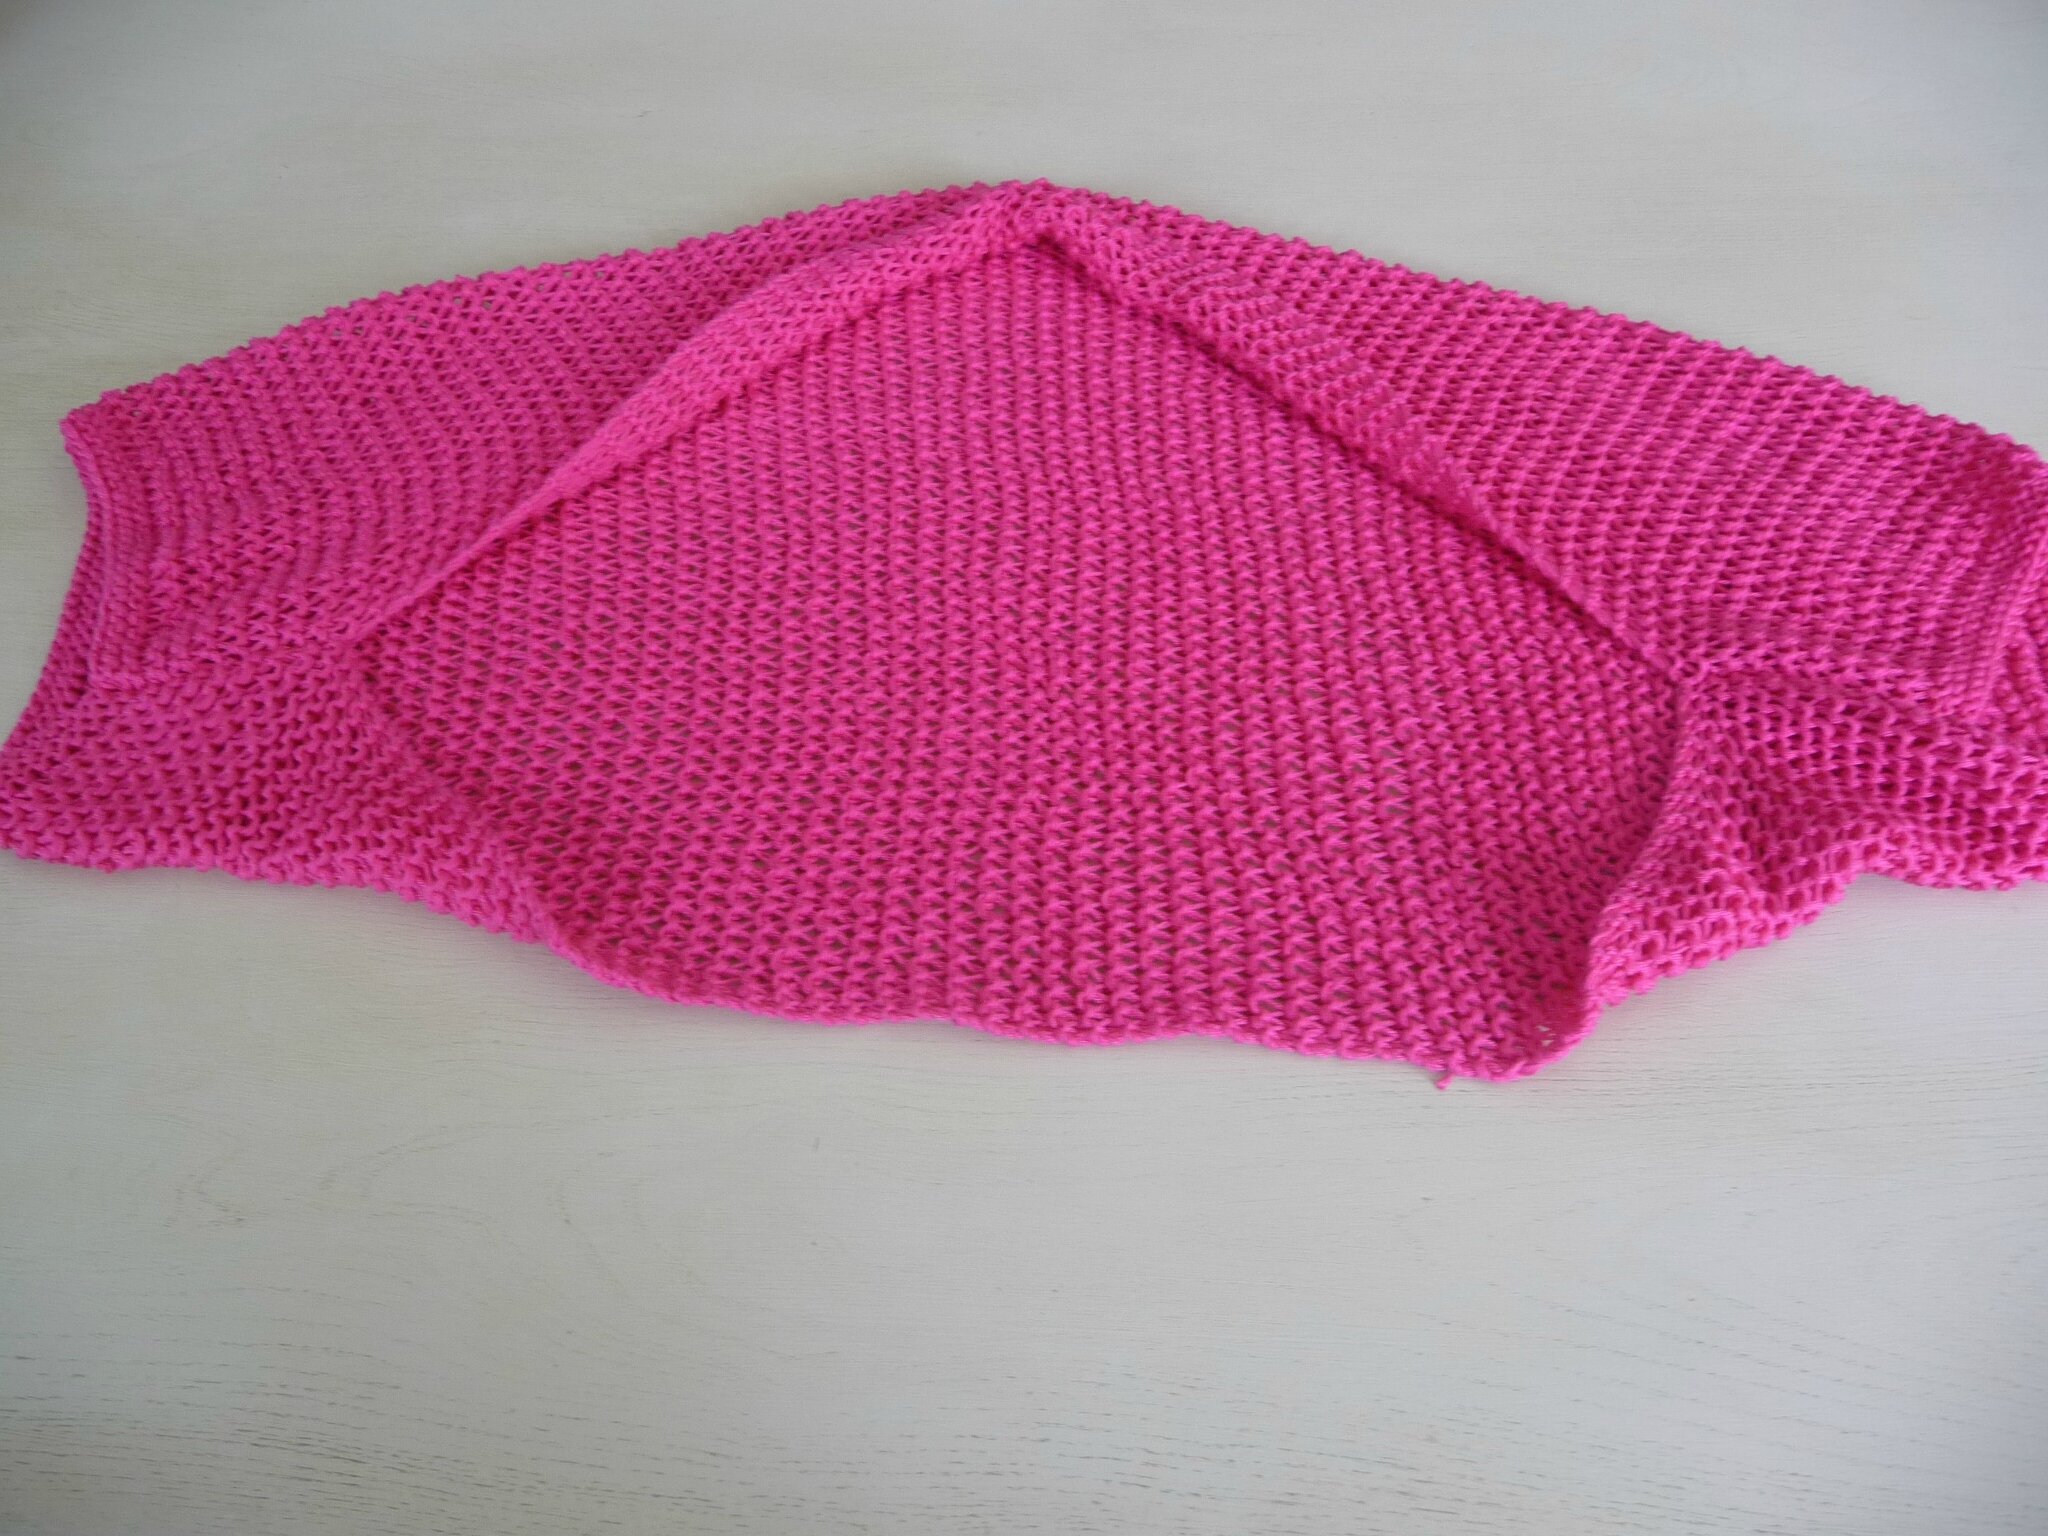 apprendre a tricoter un bolero